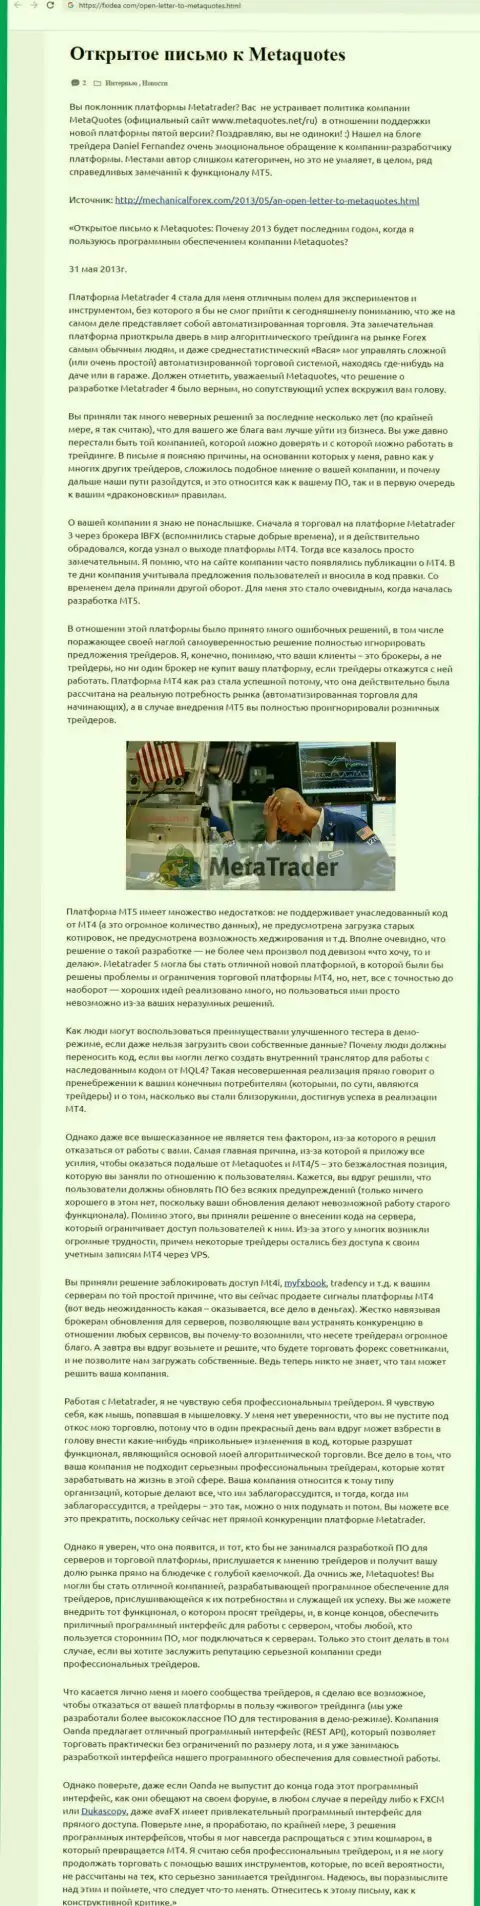 Отзыв биржевого игрока мошенника MetaQuotes Software Corp, в котором он показал личное впечатление об данной организации